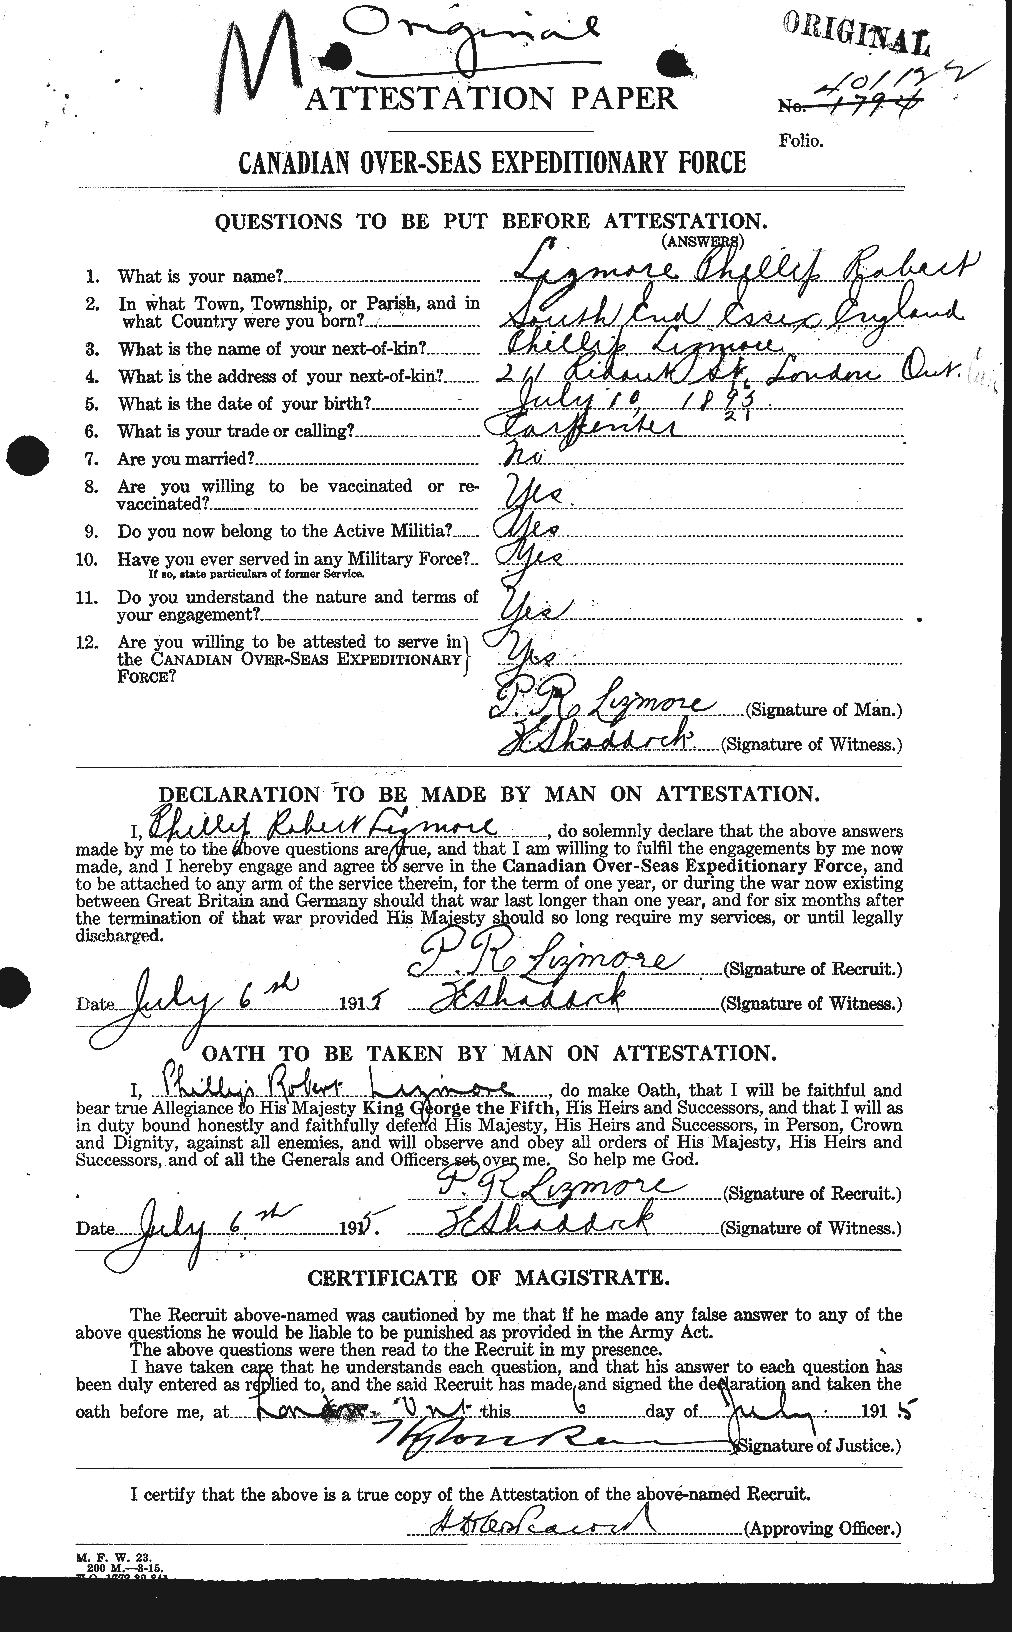 Dossiers du Personnel de la Première Guerre mondiale - CEC 466760a